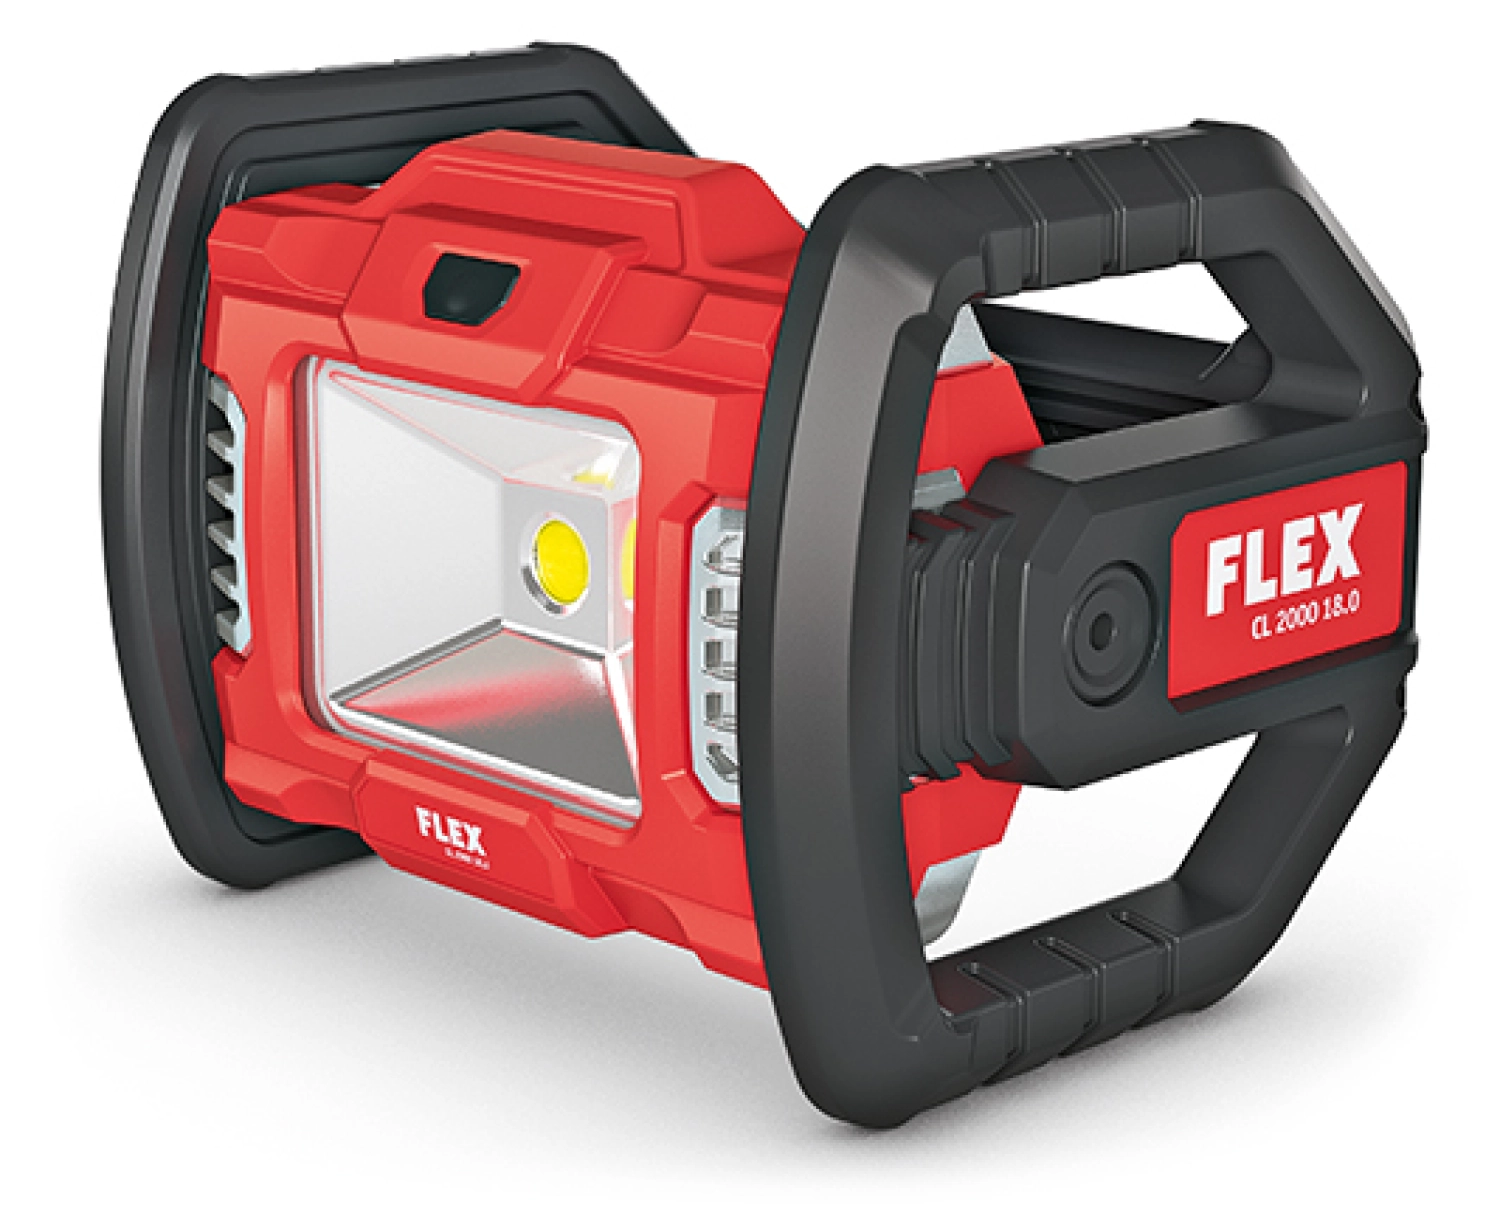 Flex CL 2000 18.0 Lampe sans fil